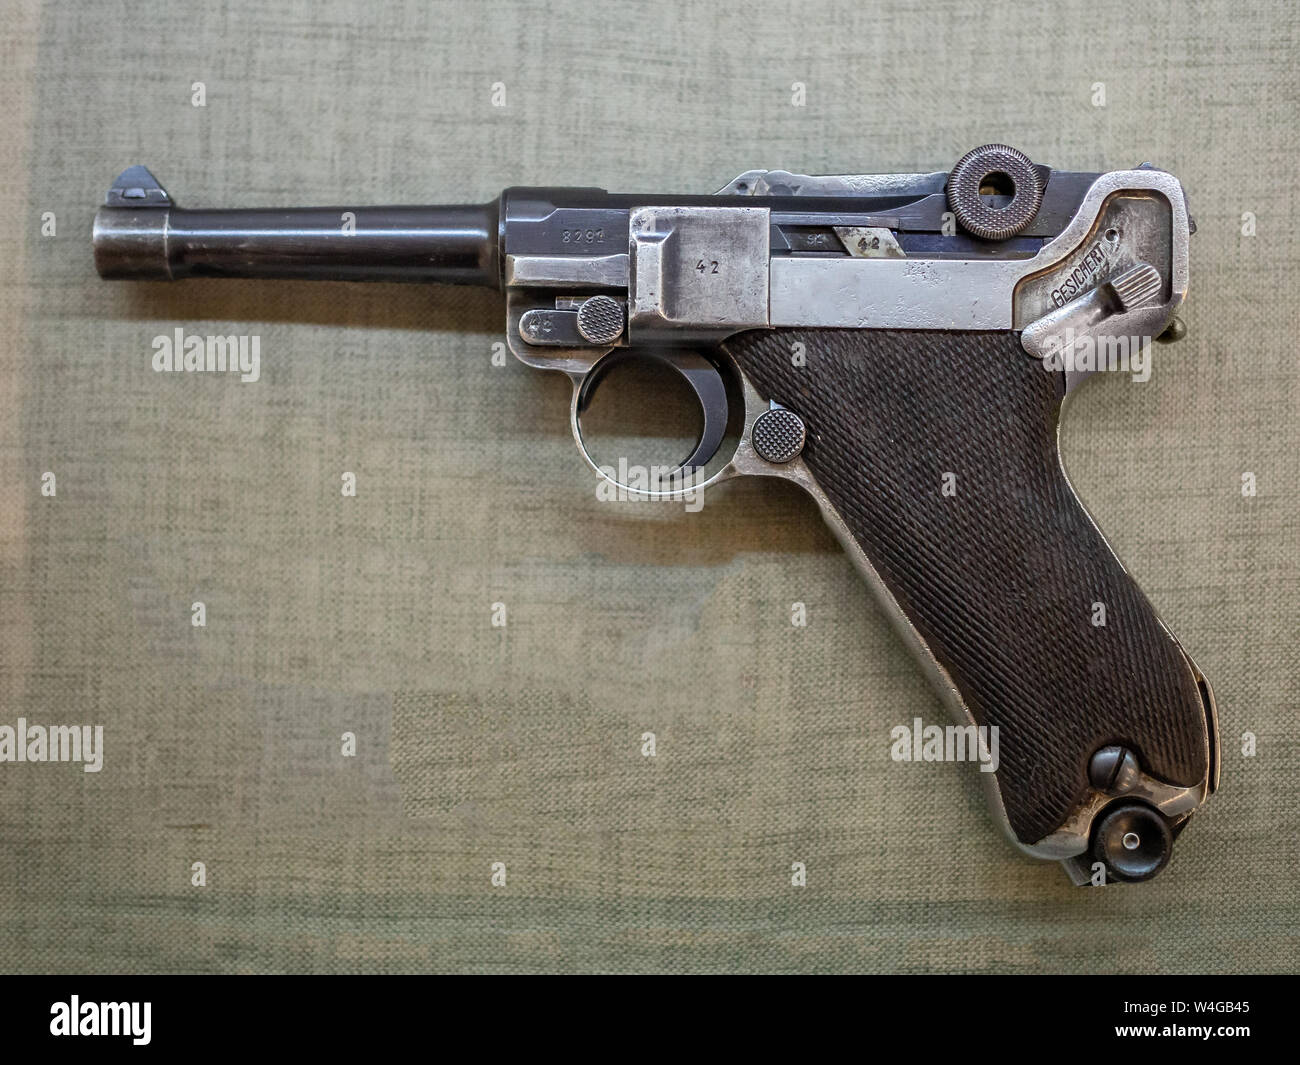 1913 Luger pistola (Pistole Parabellum-o Parabellum-Pistole (Pistola Parabellum), comunemente noto come appena Luger). Modello: Lange pistole 08 (Artiglieria orecchia Foto Stock